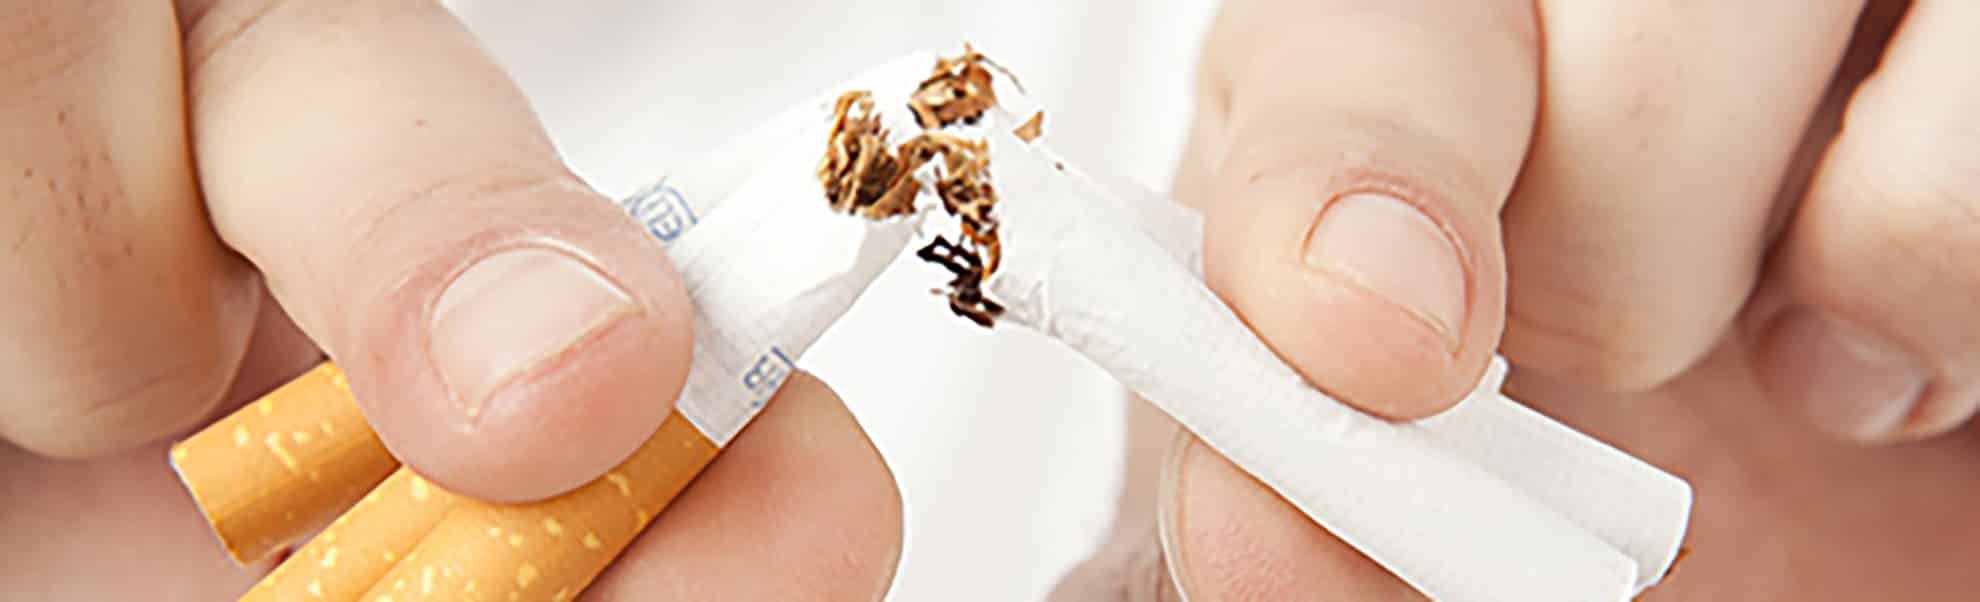 el-tabaco-mata-a-la-mitad-de-sus-consumidores-id-189